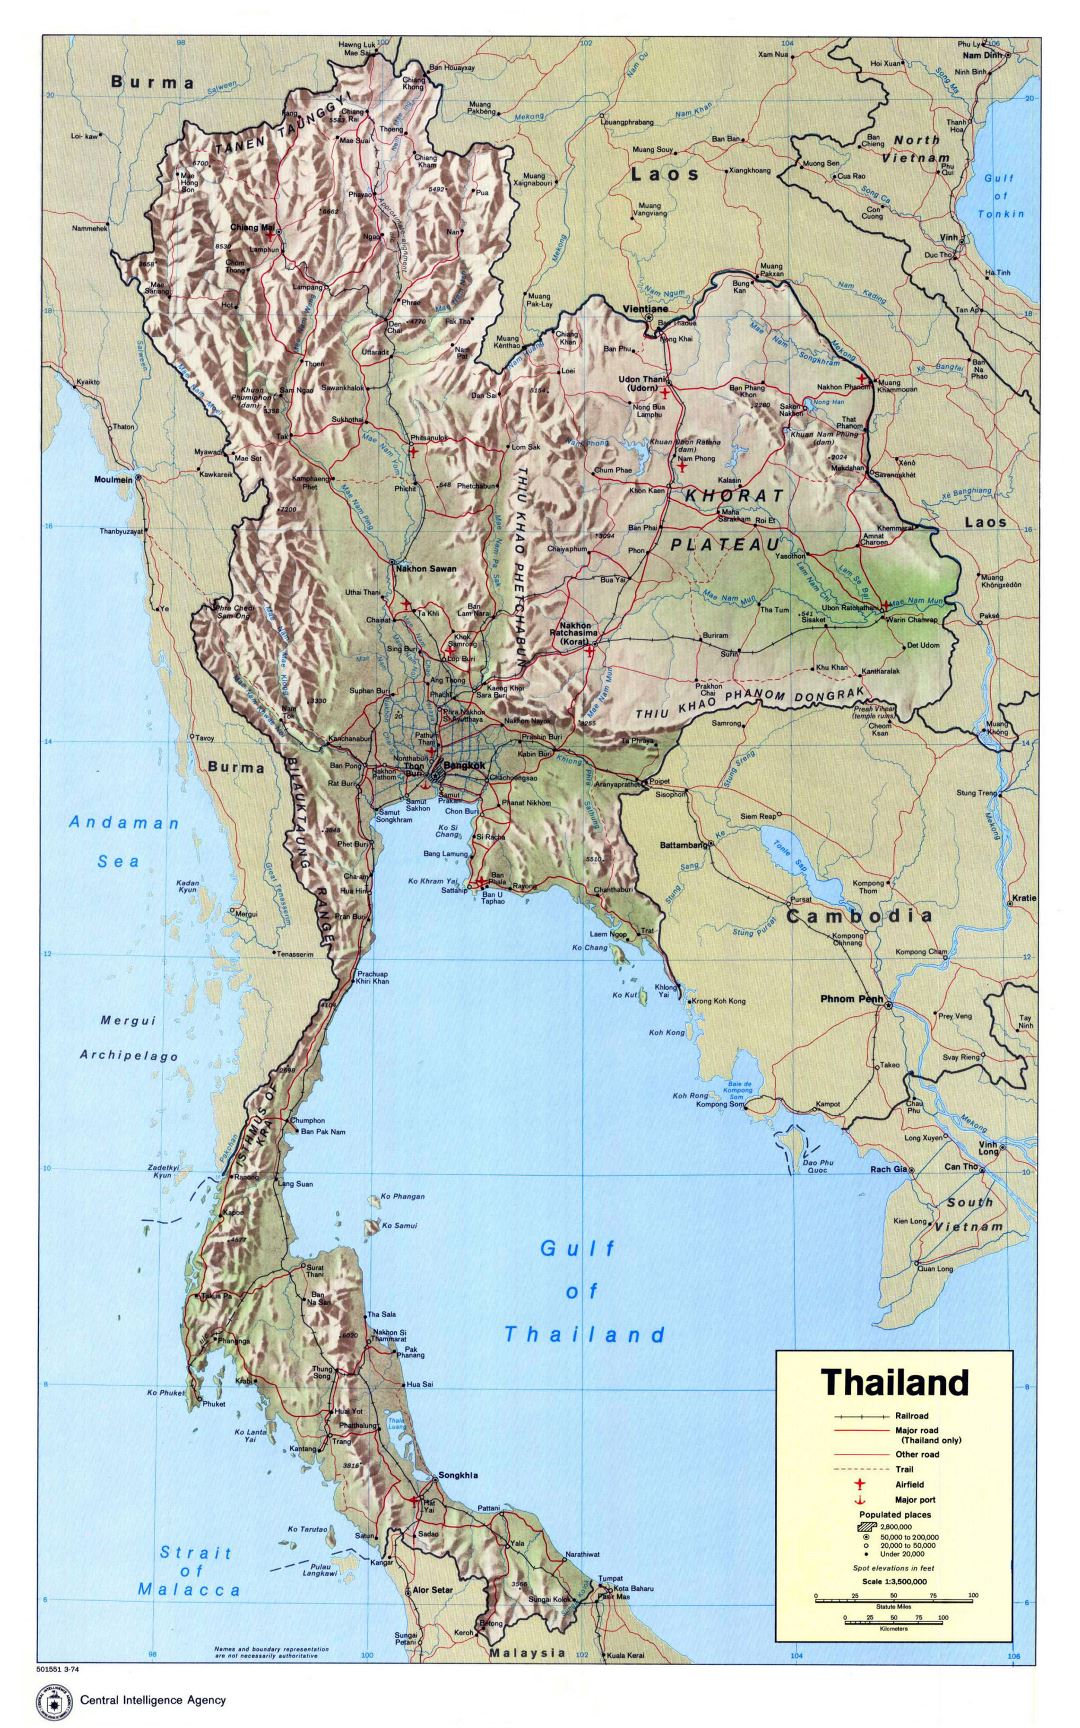 Большая детальная политическая карта Таиланда с рельефом, дорогами, железными дорогами, крупными городами, аэропортами и портами - 1974